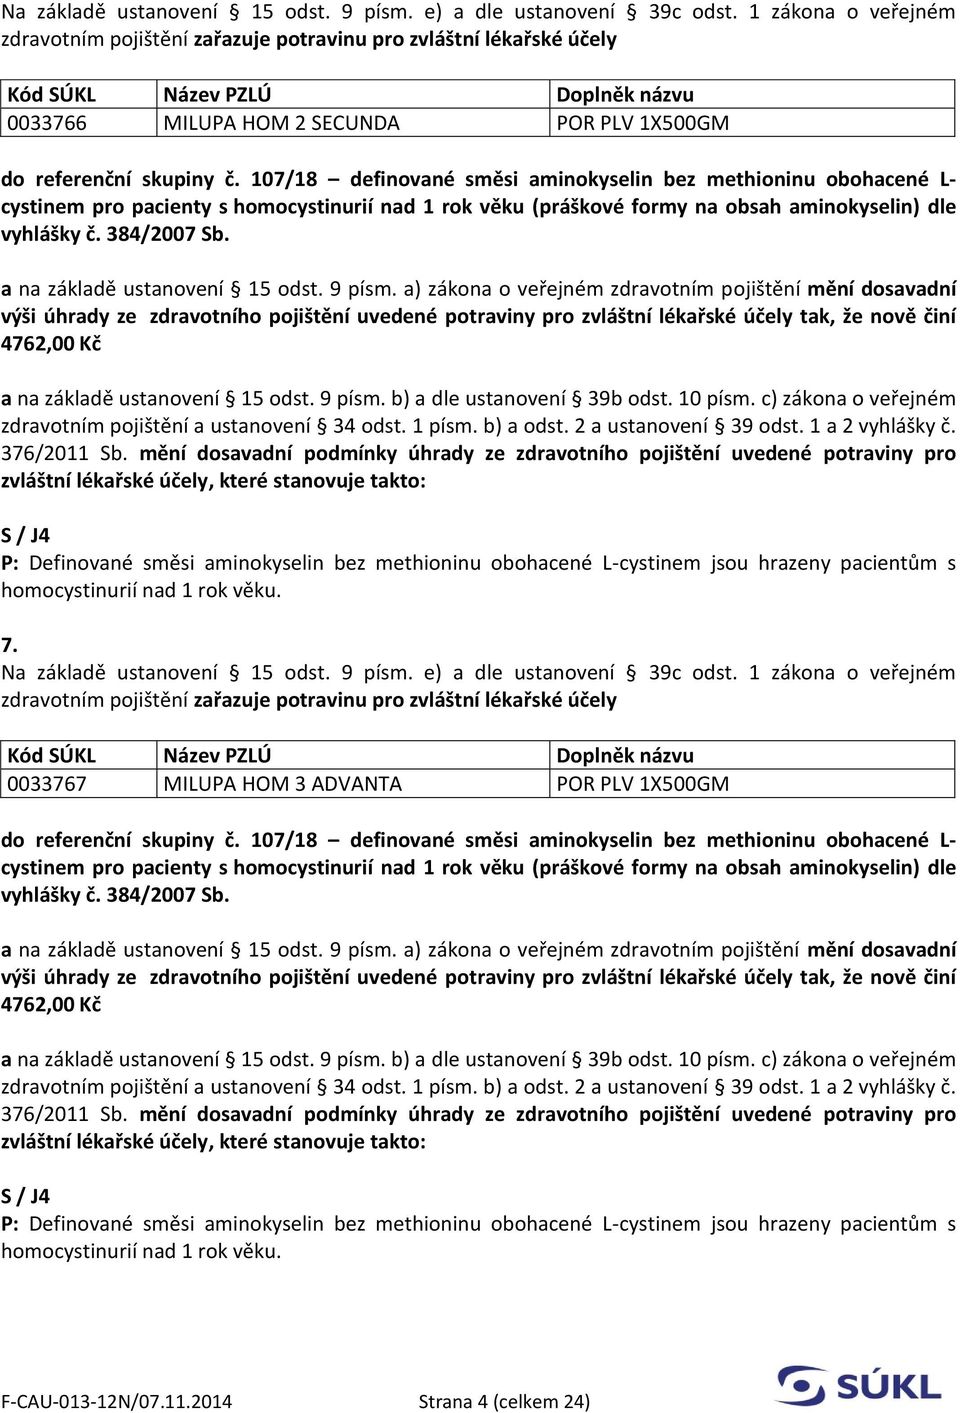 107/18 definované směsi aminokyselin bez methioninu obohacené L- cystinem pro pacienty s homocystinurií nad 1 rok věku (práškové formy na obsah aminokyselin) dle vyhlášky č. 384/2007 Sb.